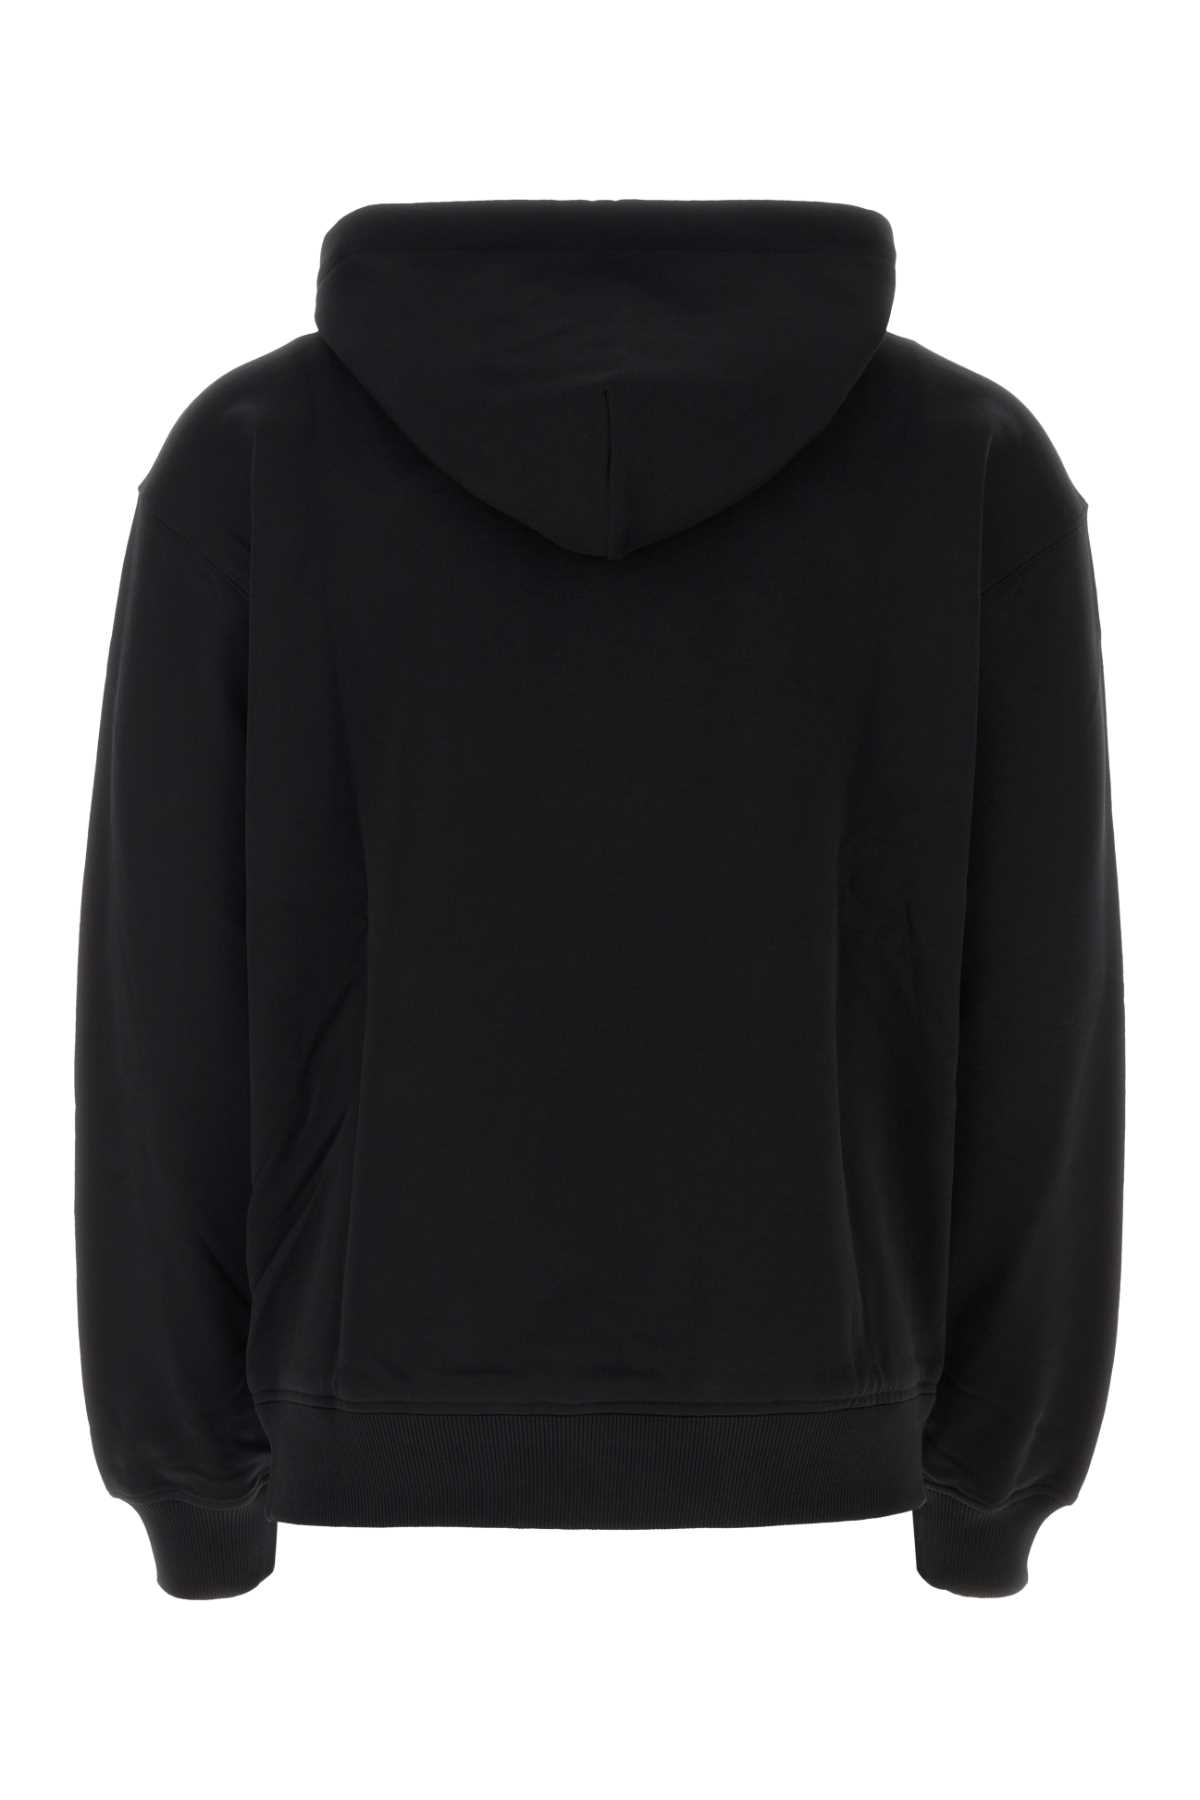 Dolce & Gabbana Black Cotton Sweatshirt In N0000